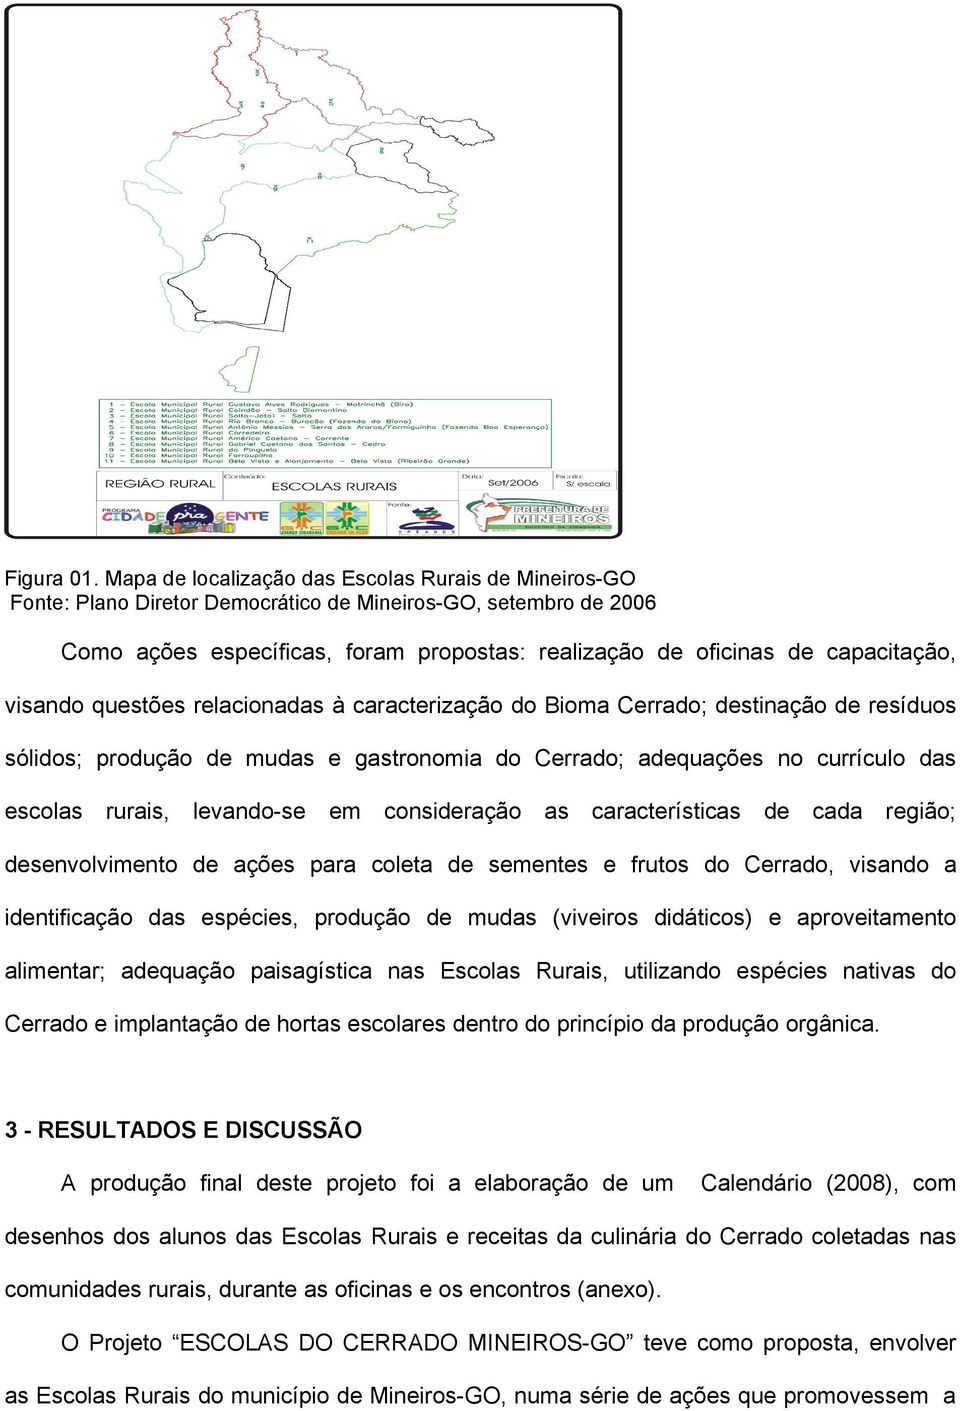 visando questões relacionadas à caracterização do Bioma Cerrado; destinação de resíduos sólidos; produção de mudas e gastronomia do Cerrado; adequações no currículo das escolas rurais, levando-se em